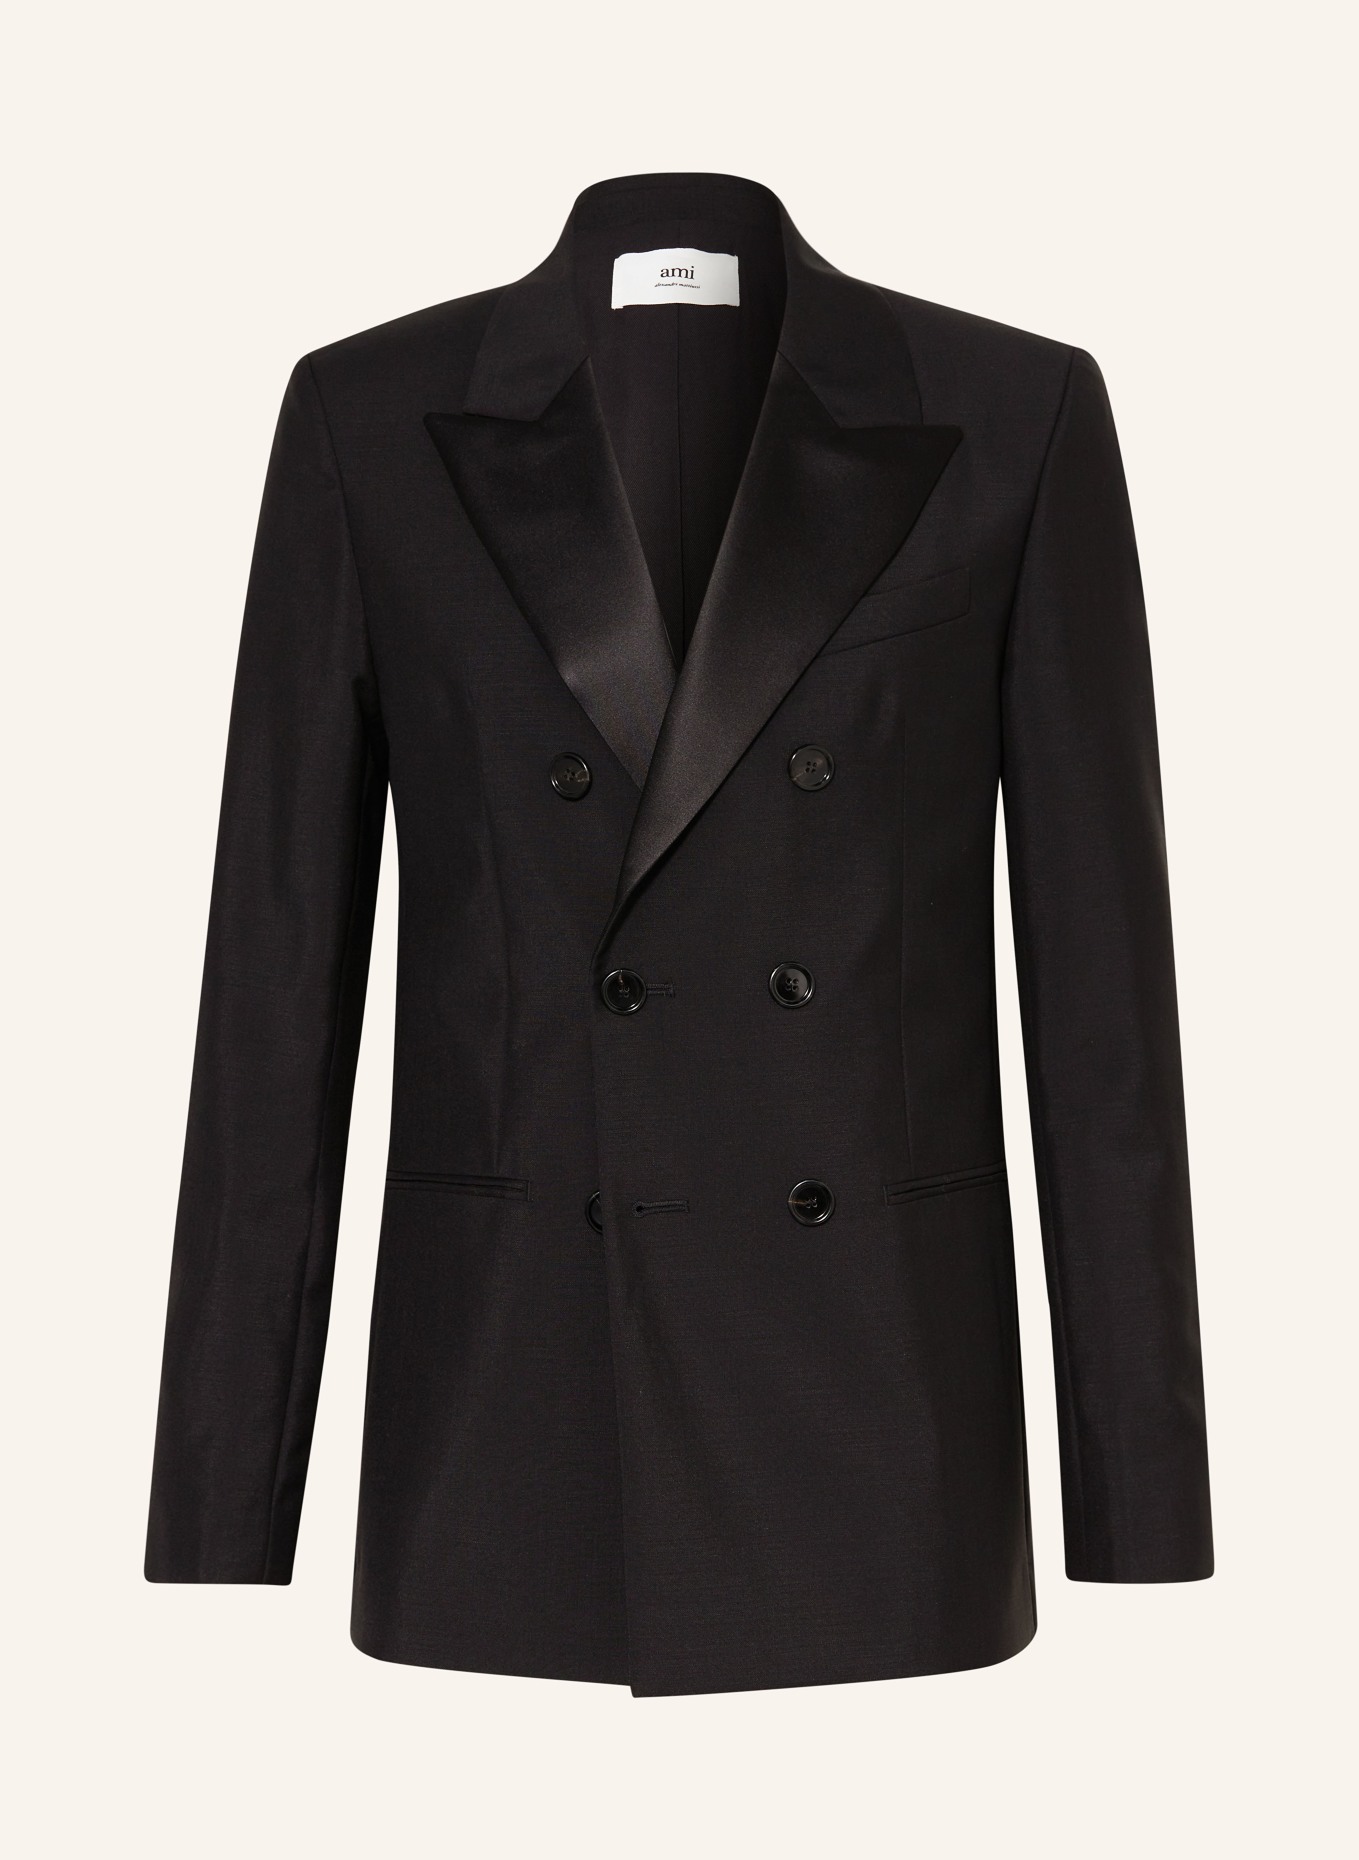 AMI PARIS Suit jacket regular fit, Color: 001 BLACK (Image 1)